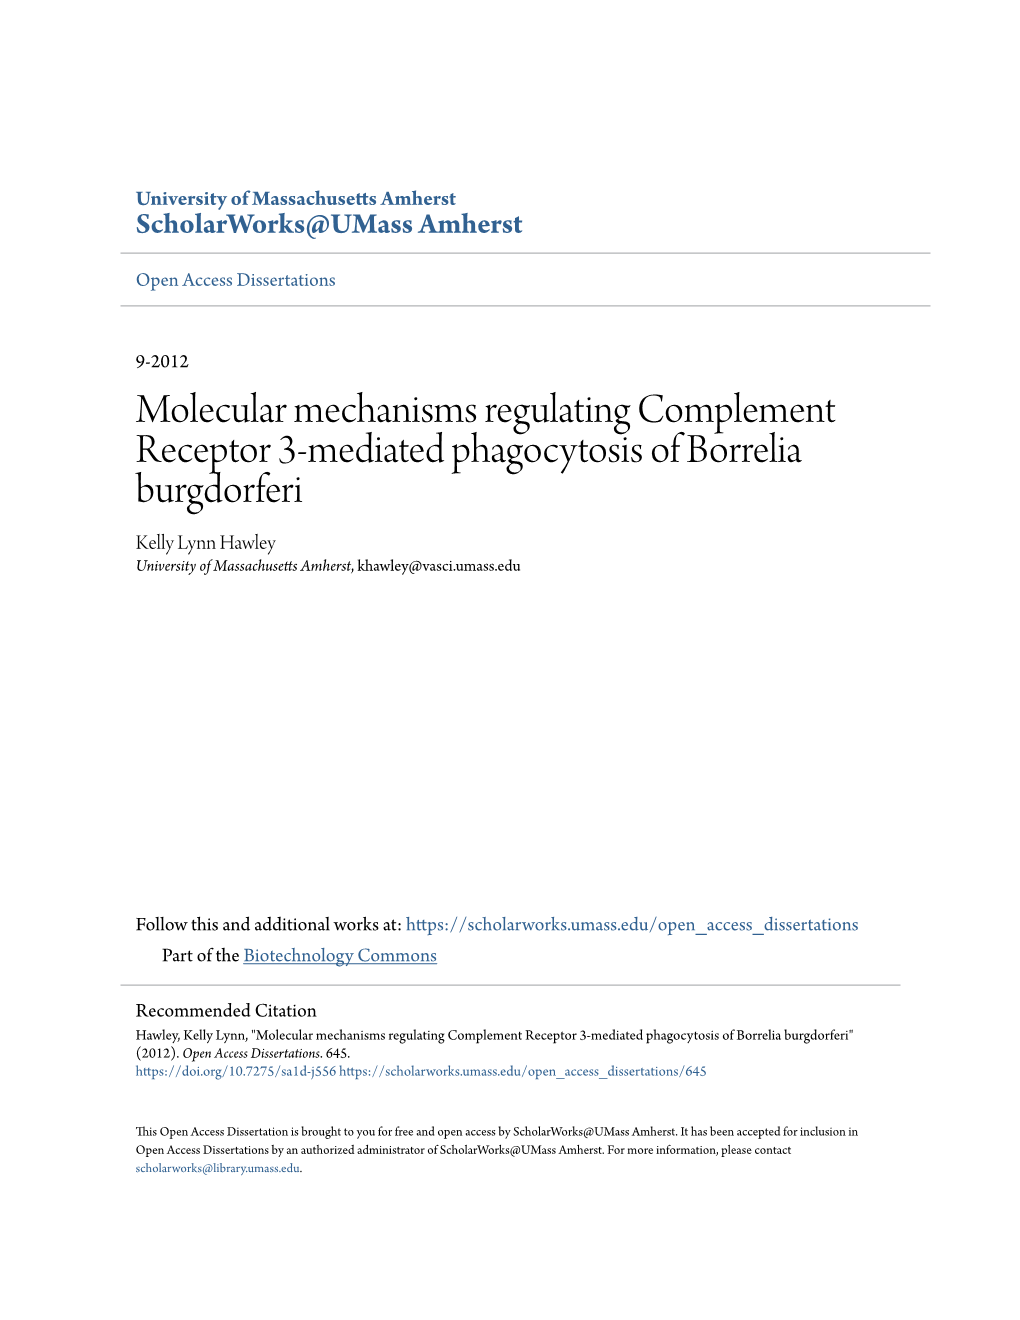 Molecular Mechanisms Regulating Complement Receptor 3-Mediated